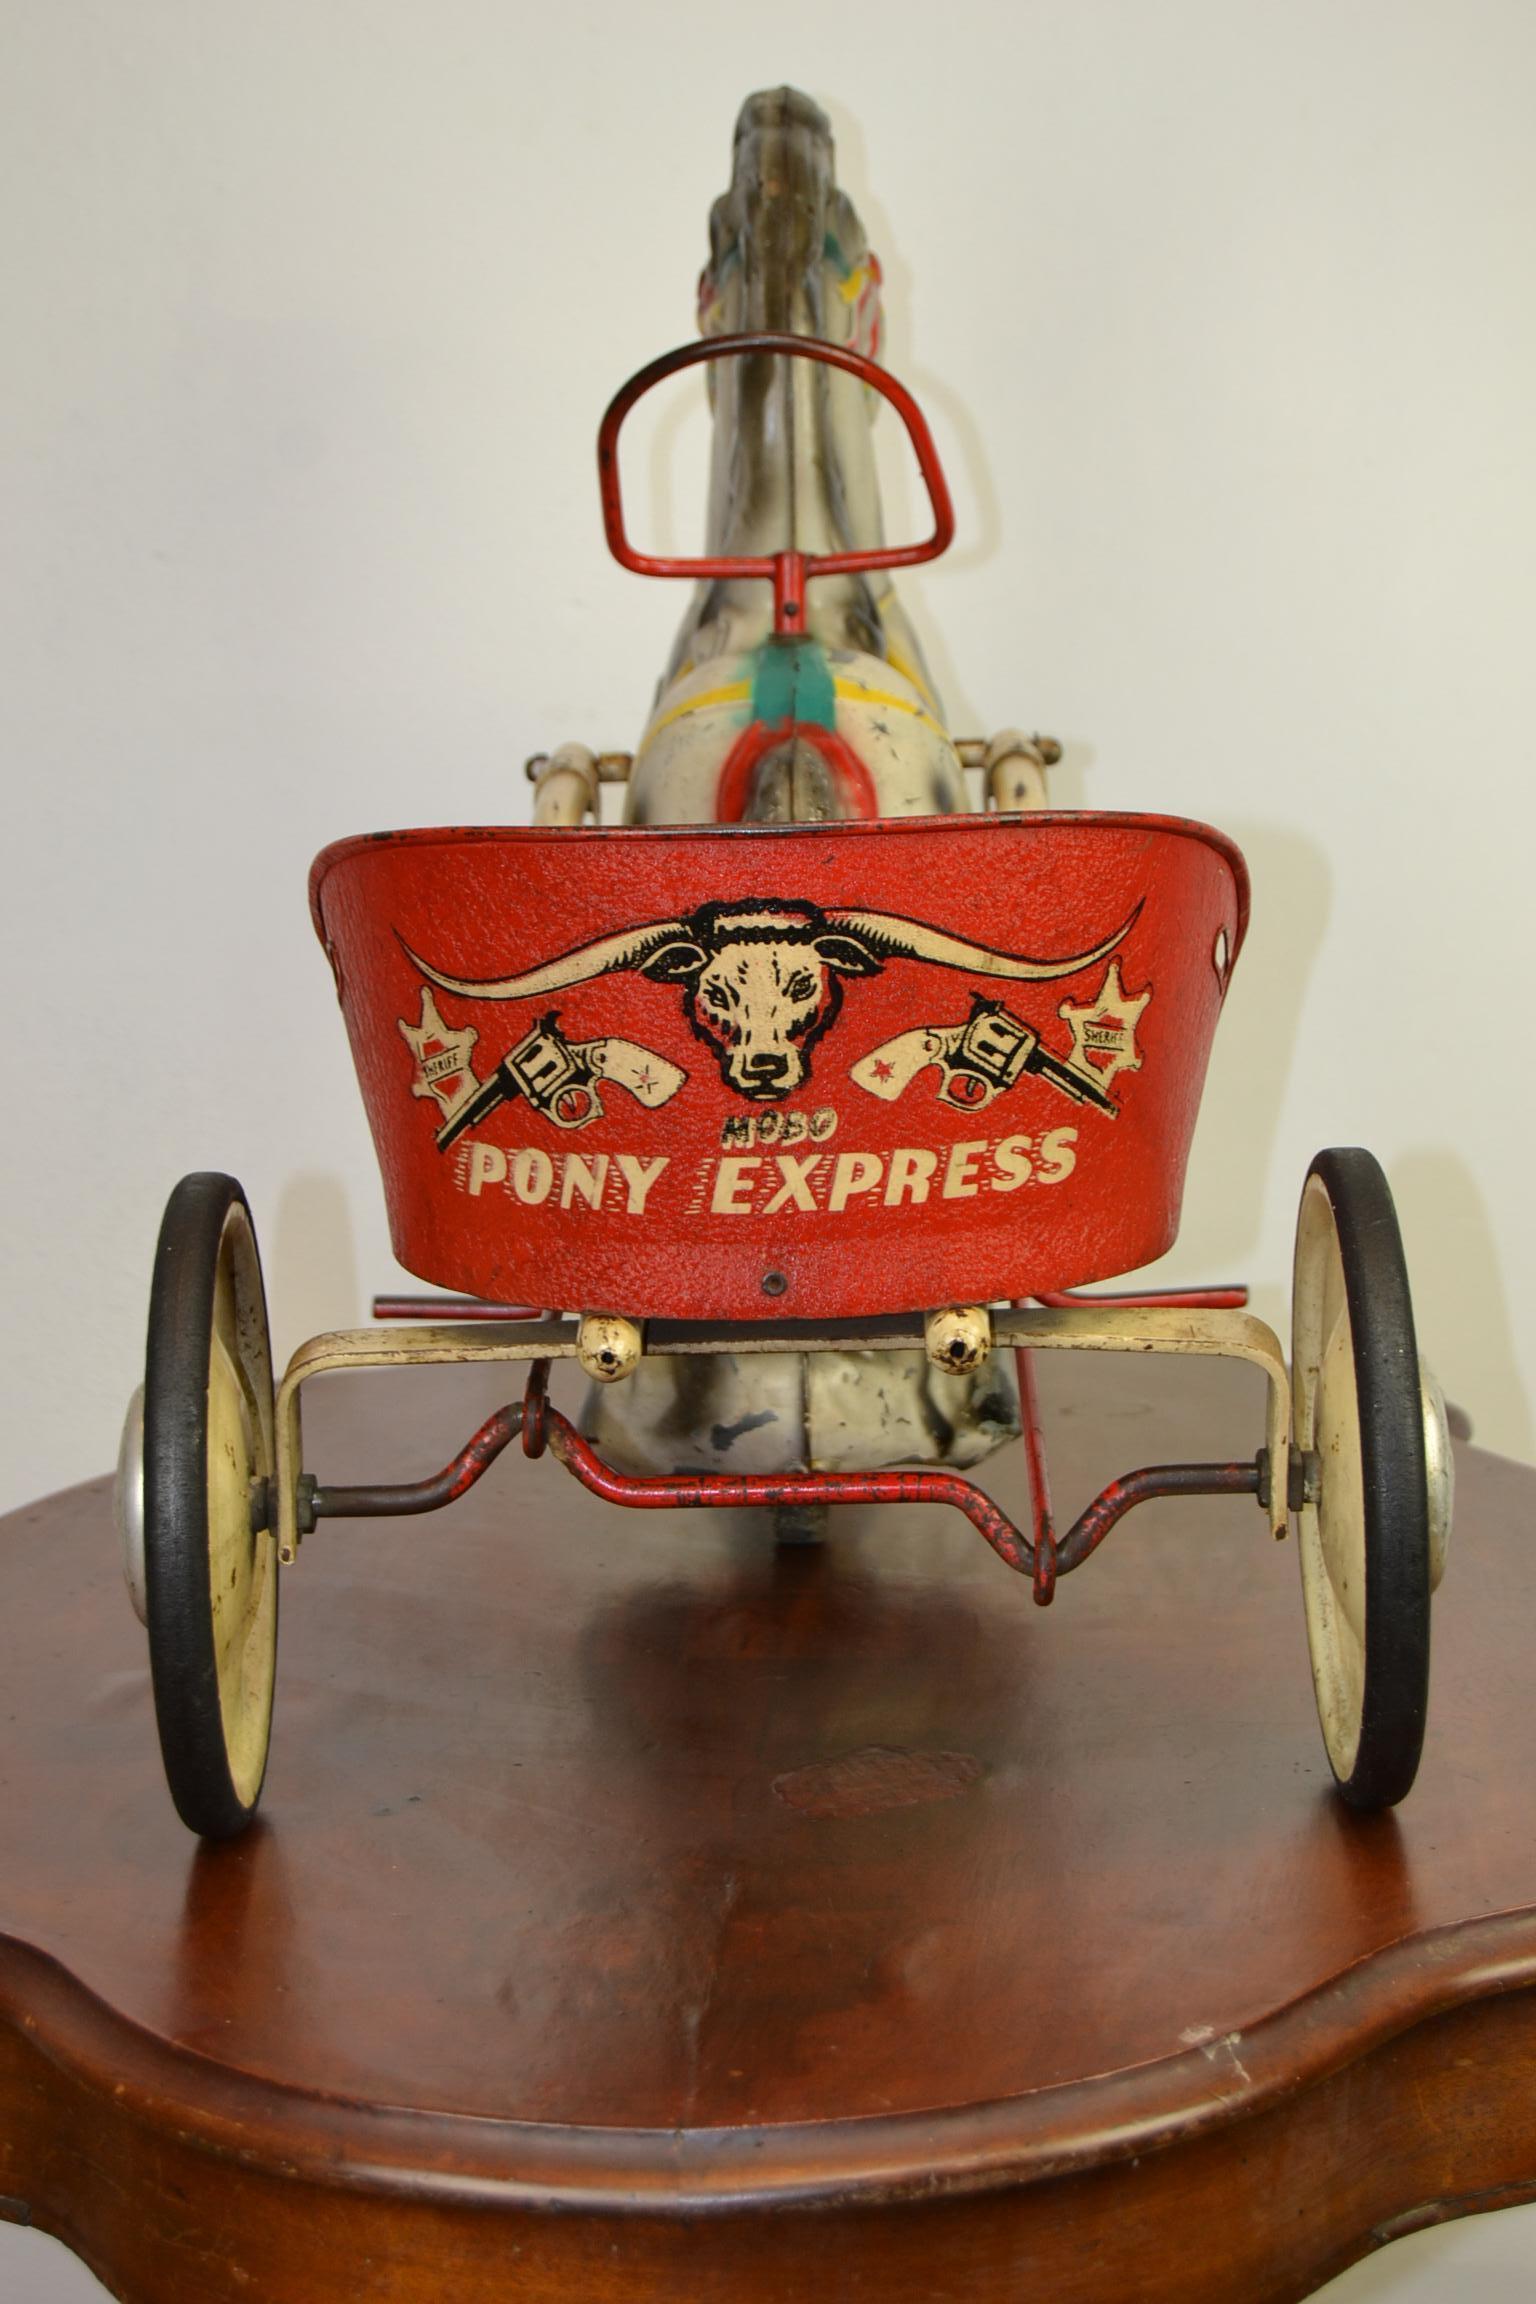 Jouet à pédale Mobo Toys pony express des années 1950.
Cette remorque Carrey avec cheval a été fabriquée par Sebel Mobo Toy, D. Sebel & co Erith Kent, Angleterre.
Il s'agit d'un jouet en acier pressé avec pédales représentant un joli poney avec un